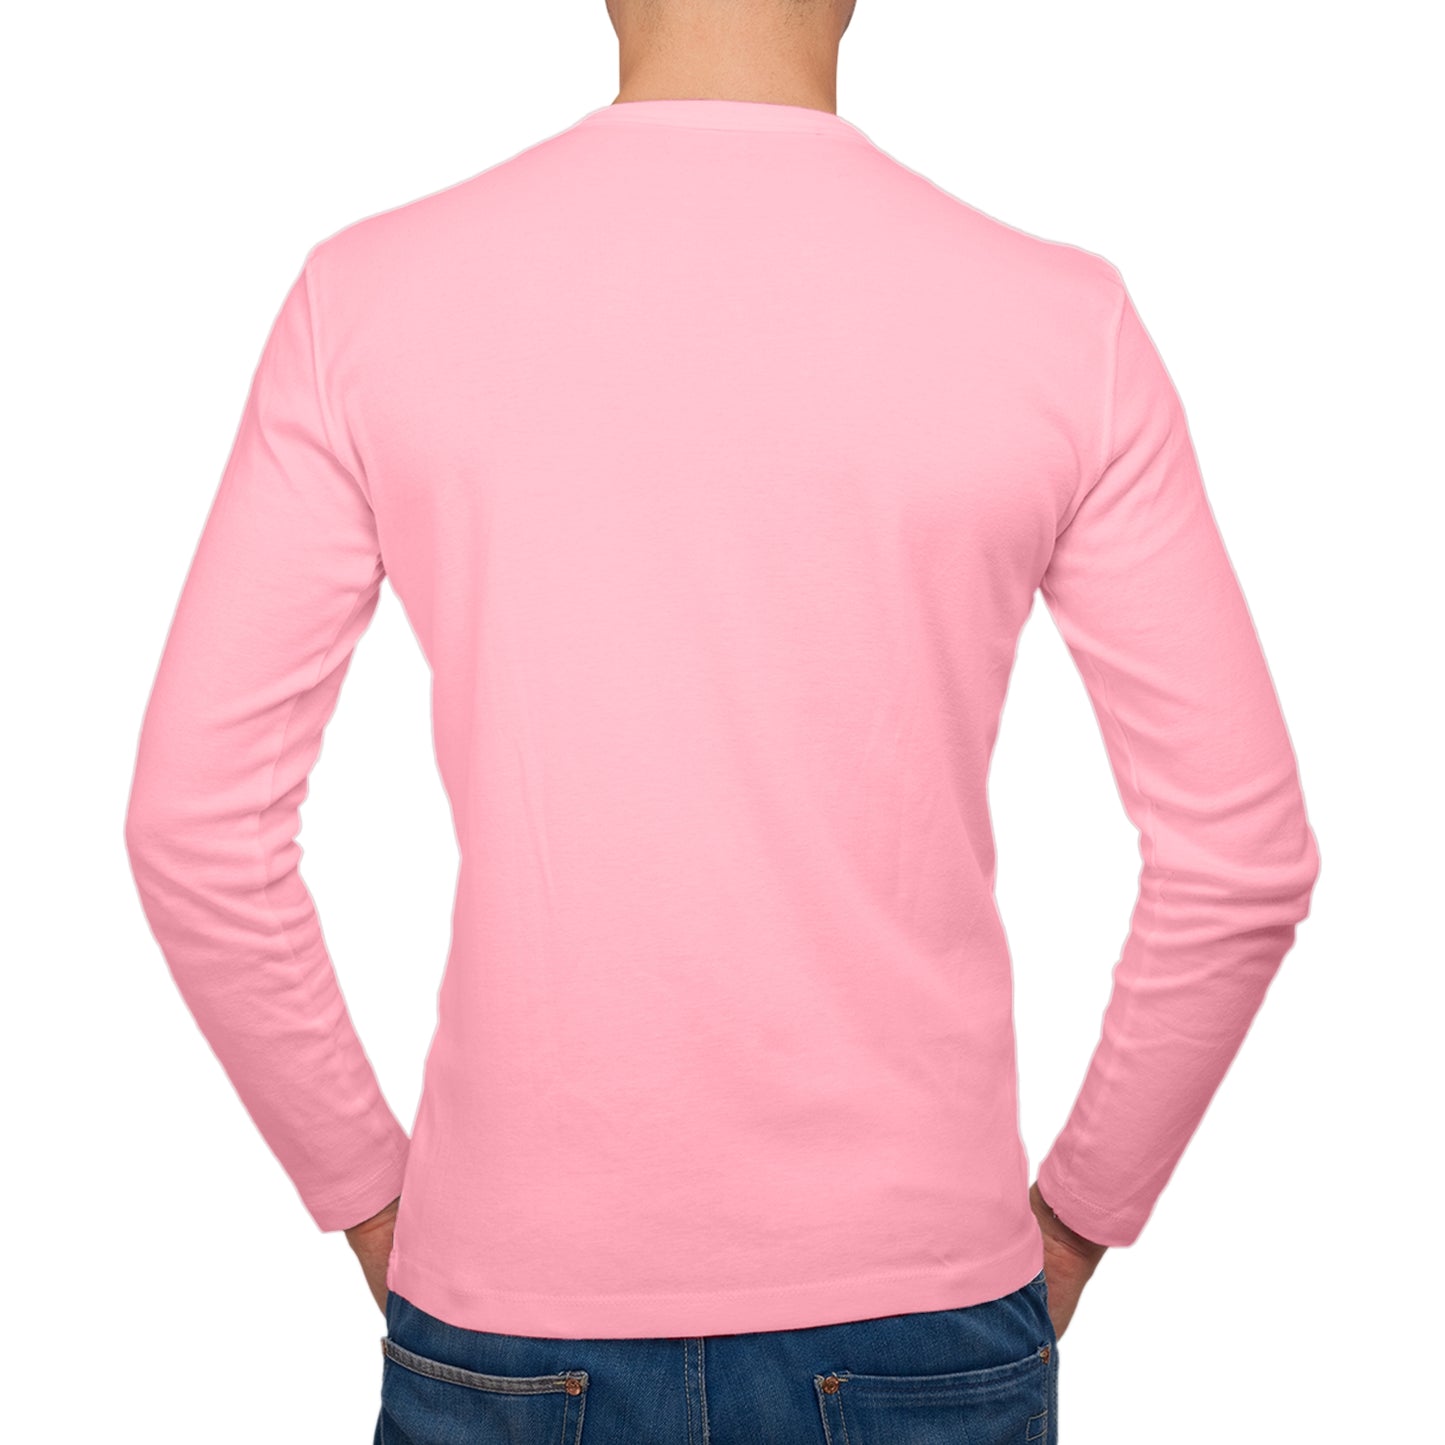 Full Sleeves Pink T-Shirt For Men - FlyingCart.pk